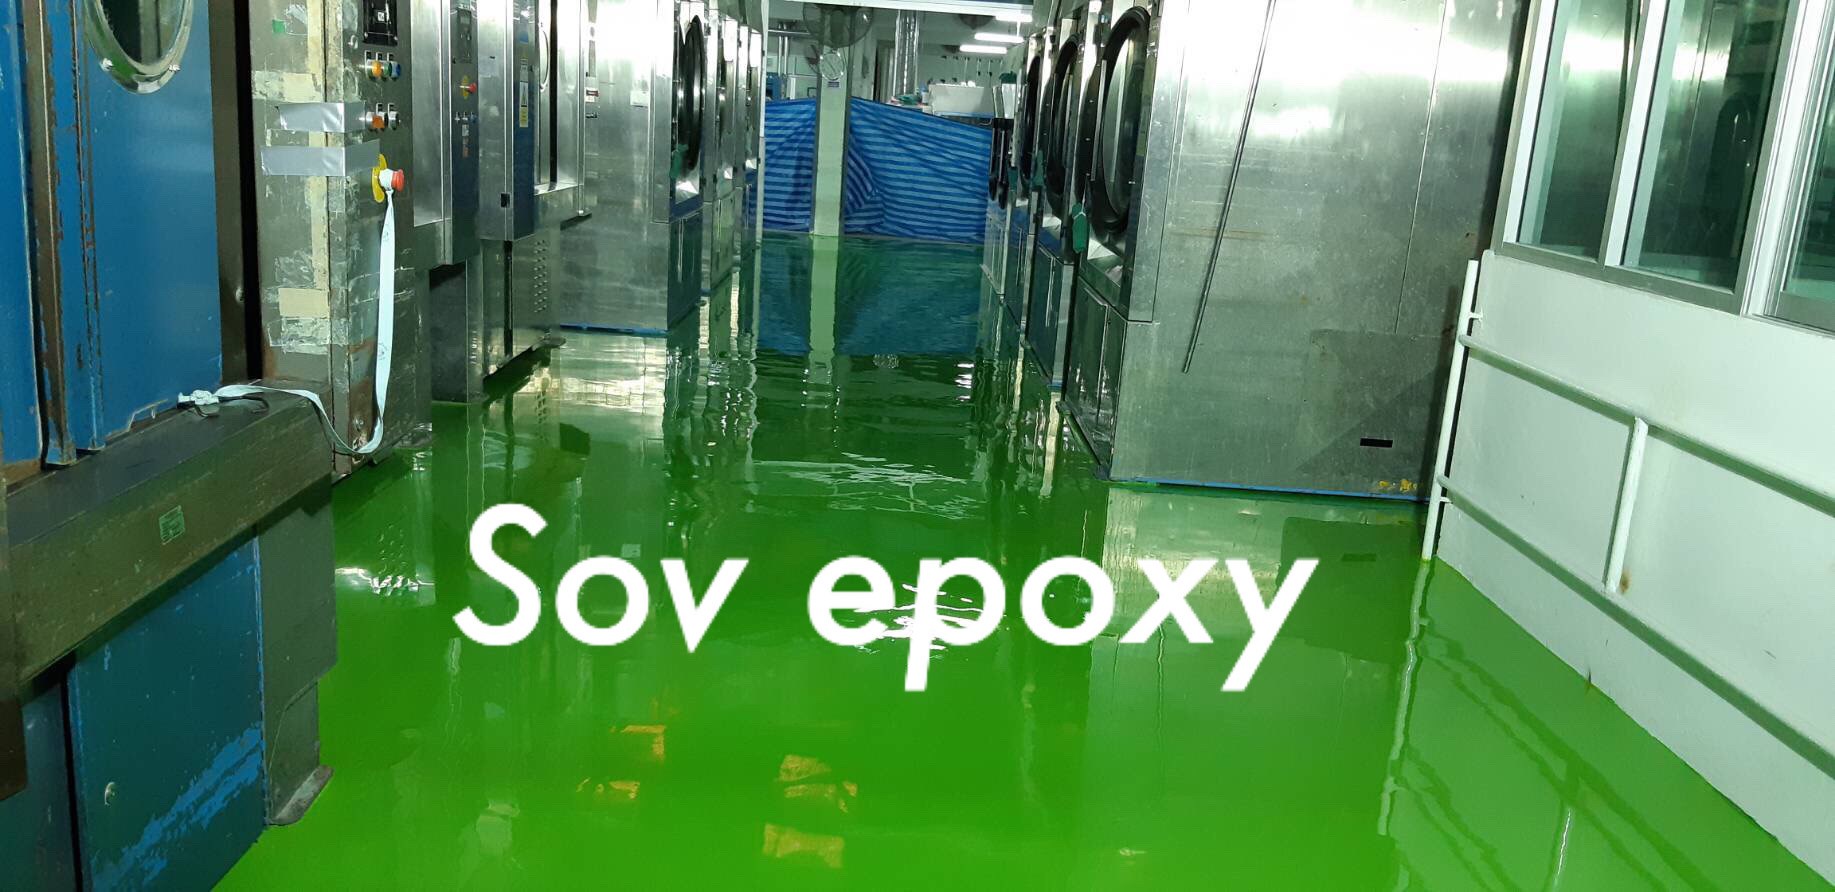 Sov Epoxy ทำพื้นอีพ็อกซี่ พื้นพียู พื้นโรงงาน พื้นสนามกีฬา 10